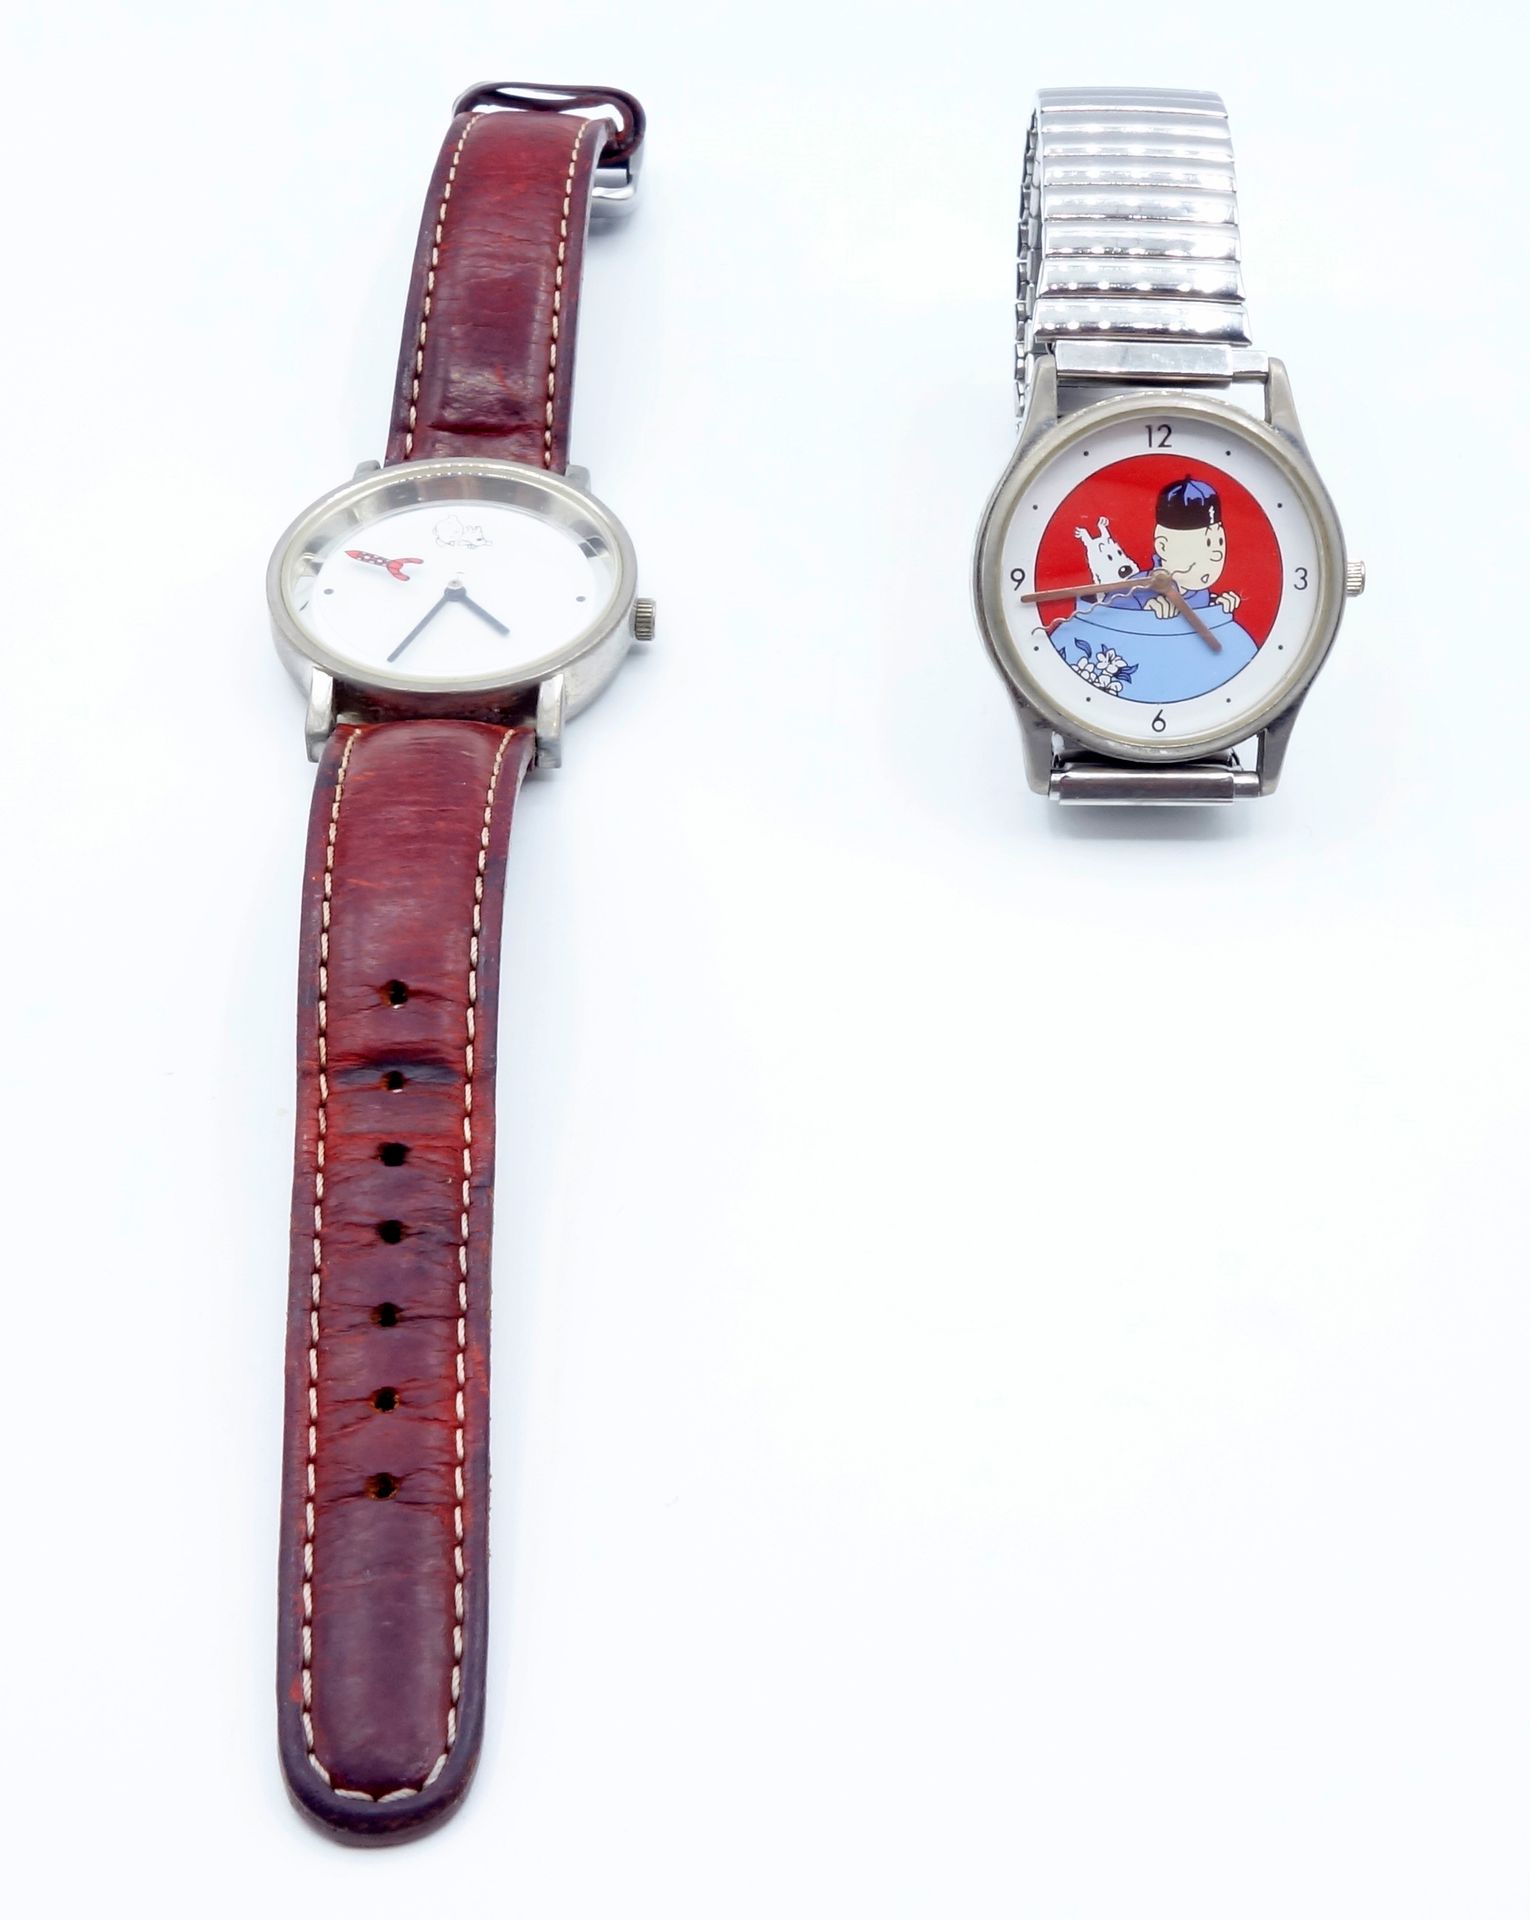 DIVERS 
Set di 3 orologi, 2 Tintin (Citime) e 1 Le Chat. Condizioni molto buone.